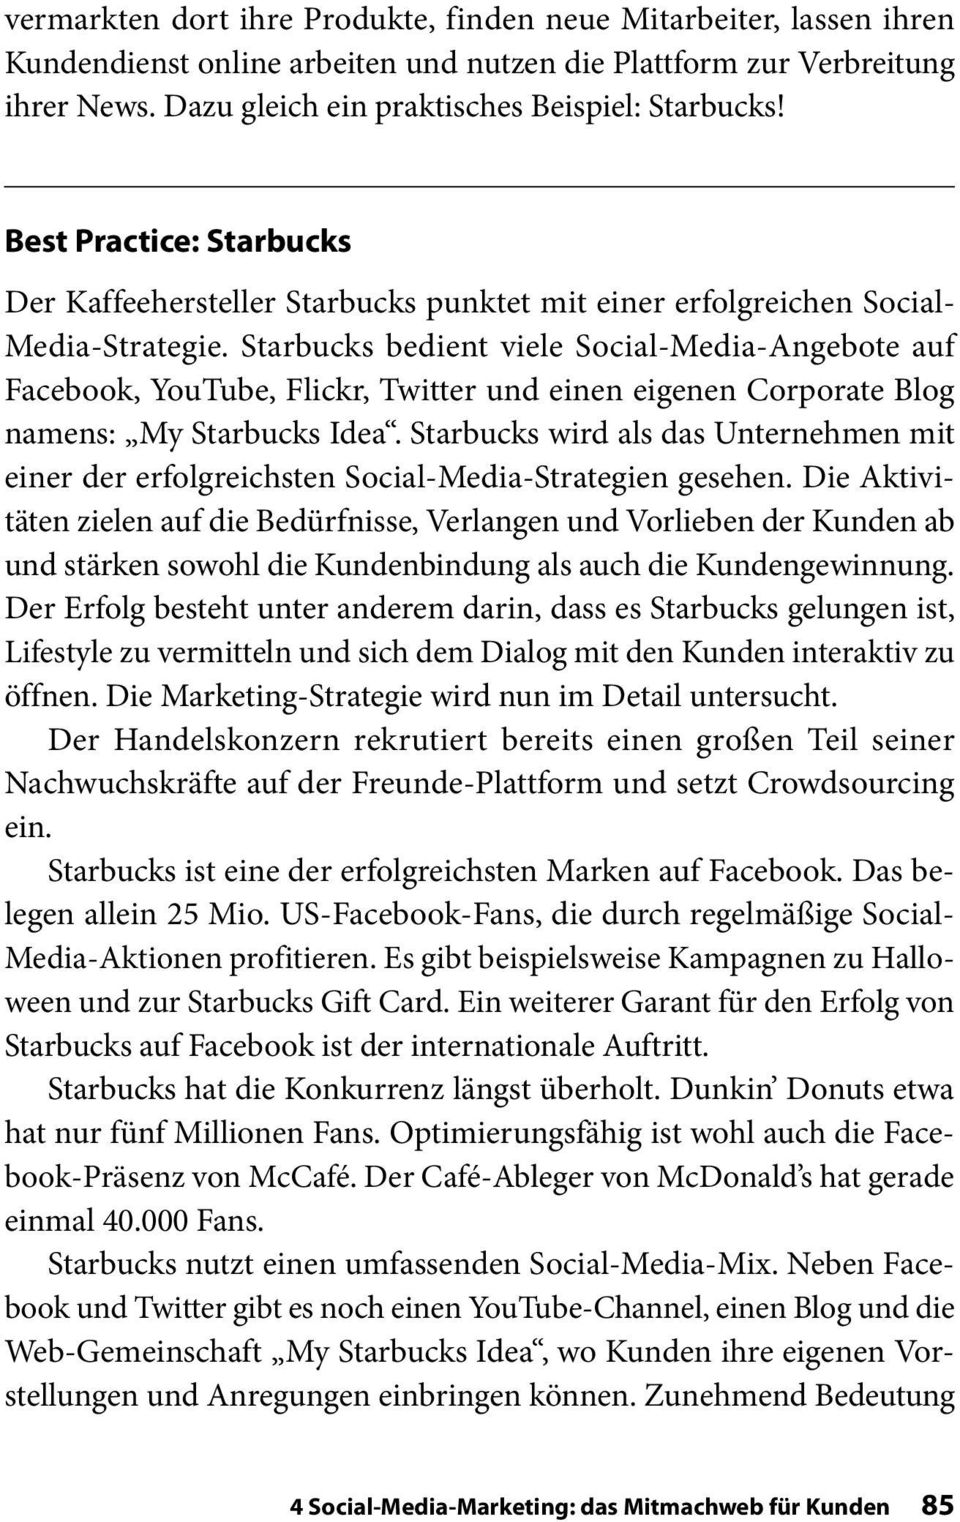 Starbucks bedient viele Social-Media-Angebote auf Face book, YouTube, Flickr, Twitter und einen eigenen Corporate Blog namens: My Starbucks Idea.